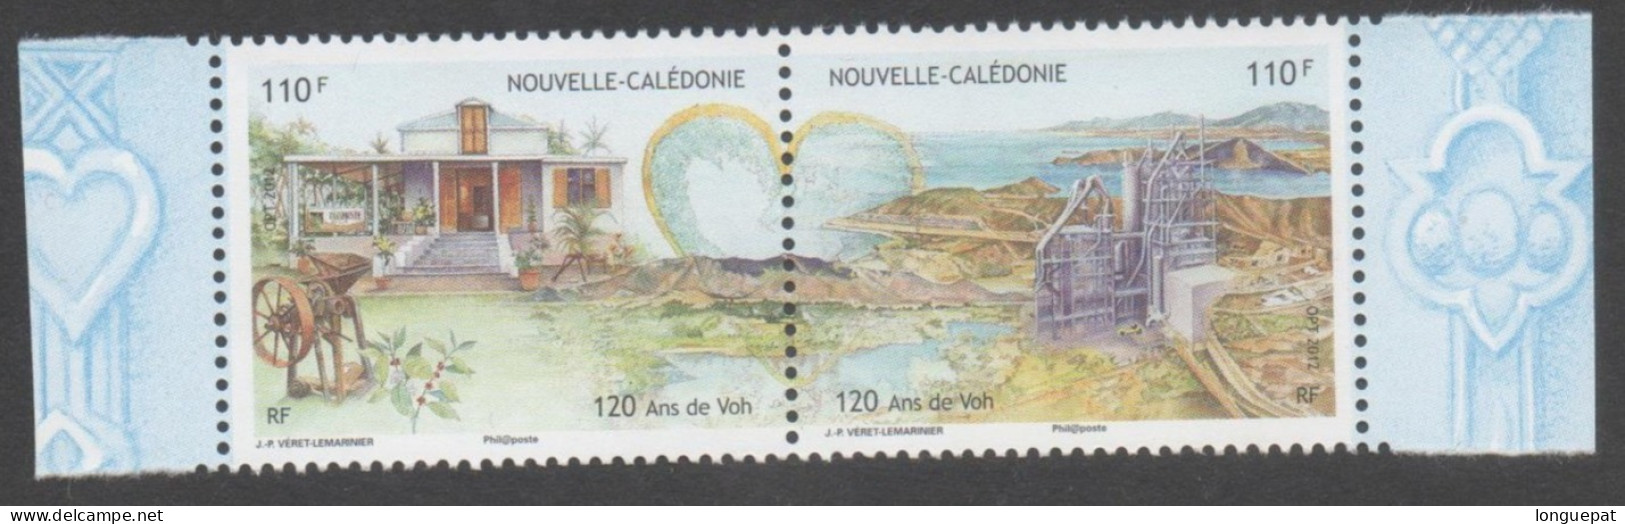 Nelle CALEDONIE - Ville De VOH : 120 Ans De La Ville - Maison, Usine Et Paysage - Nickel - - Neufs